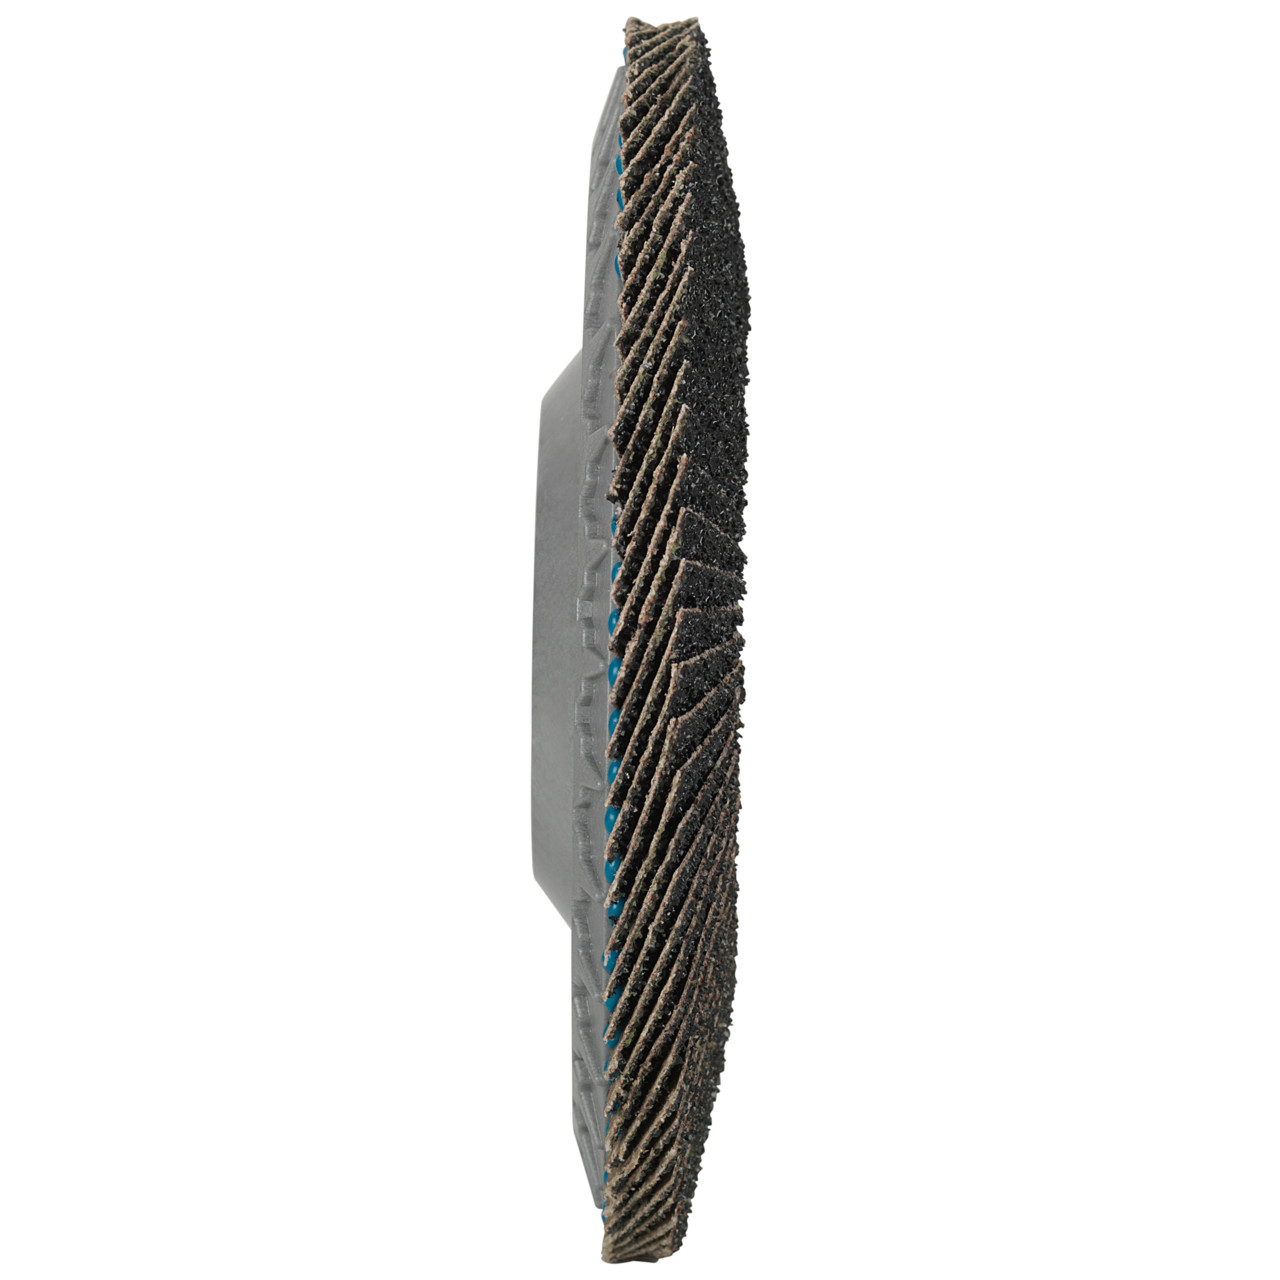 Tyrolit Arandela de seguridad dentada DxH 115x22,23 LONGLIFE C-TRIM para acero y acero inoxidable, P120, forma: 28N - versión recta (cuerpo portador de plástico), Art. 34239194